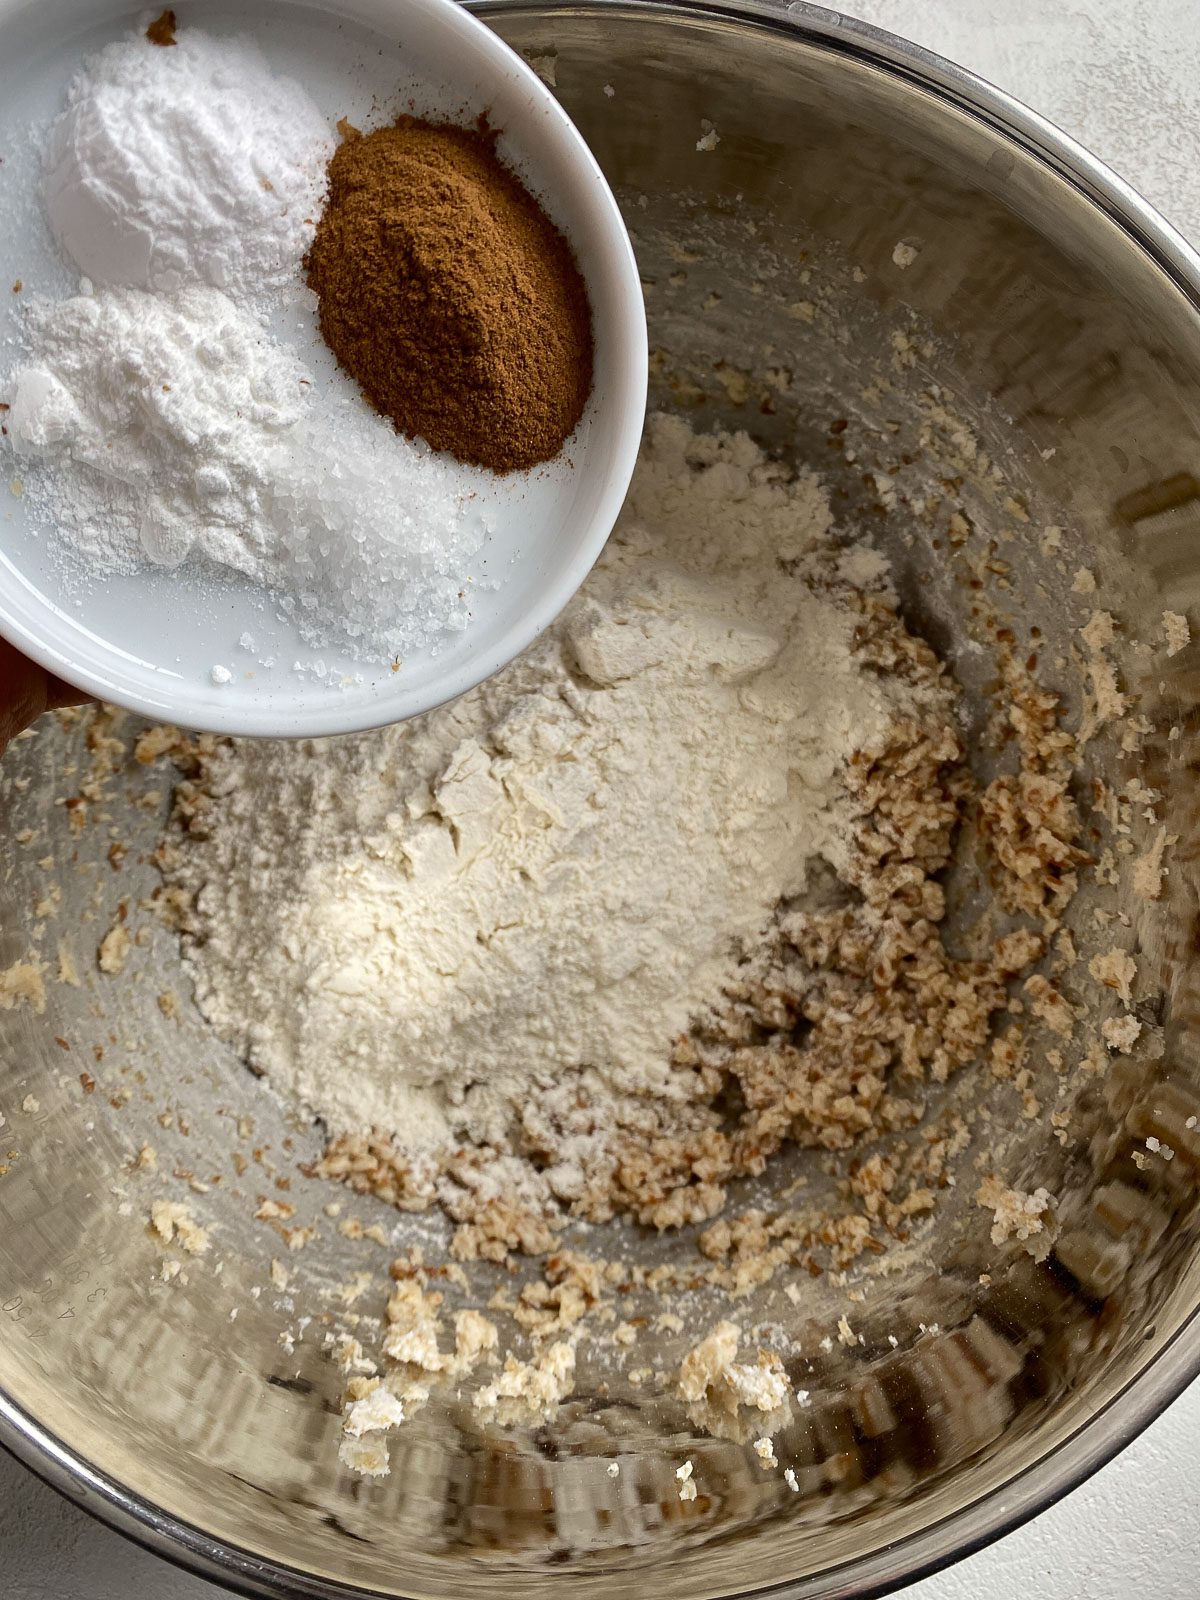 process of adding cinnamon, baking powder and baking soda to mixing bowl